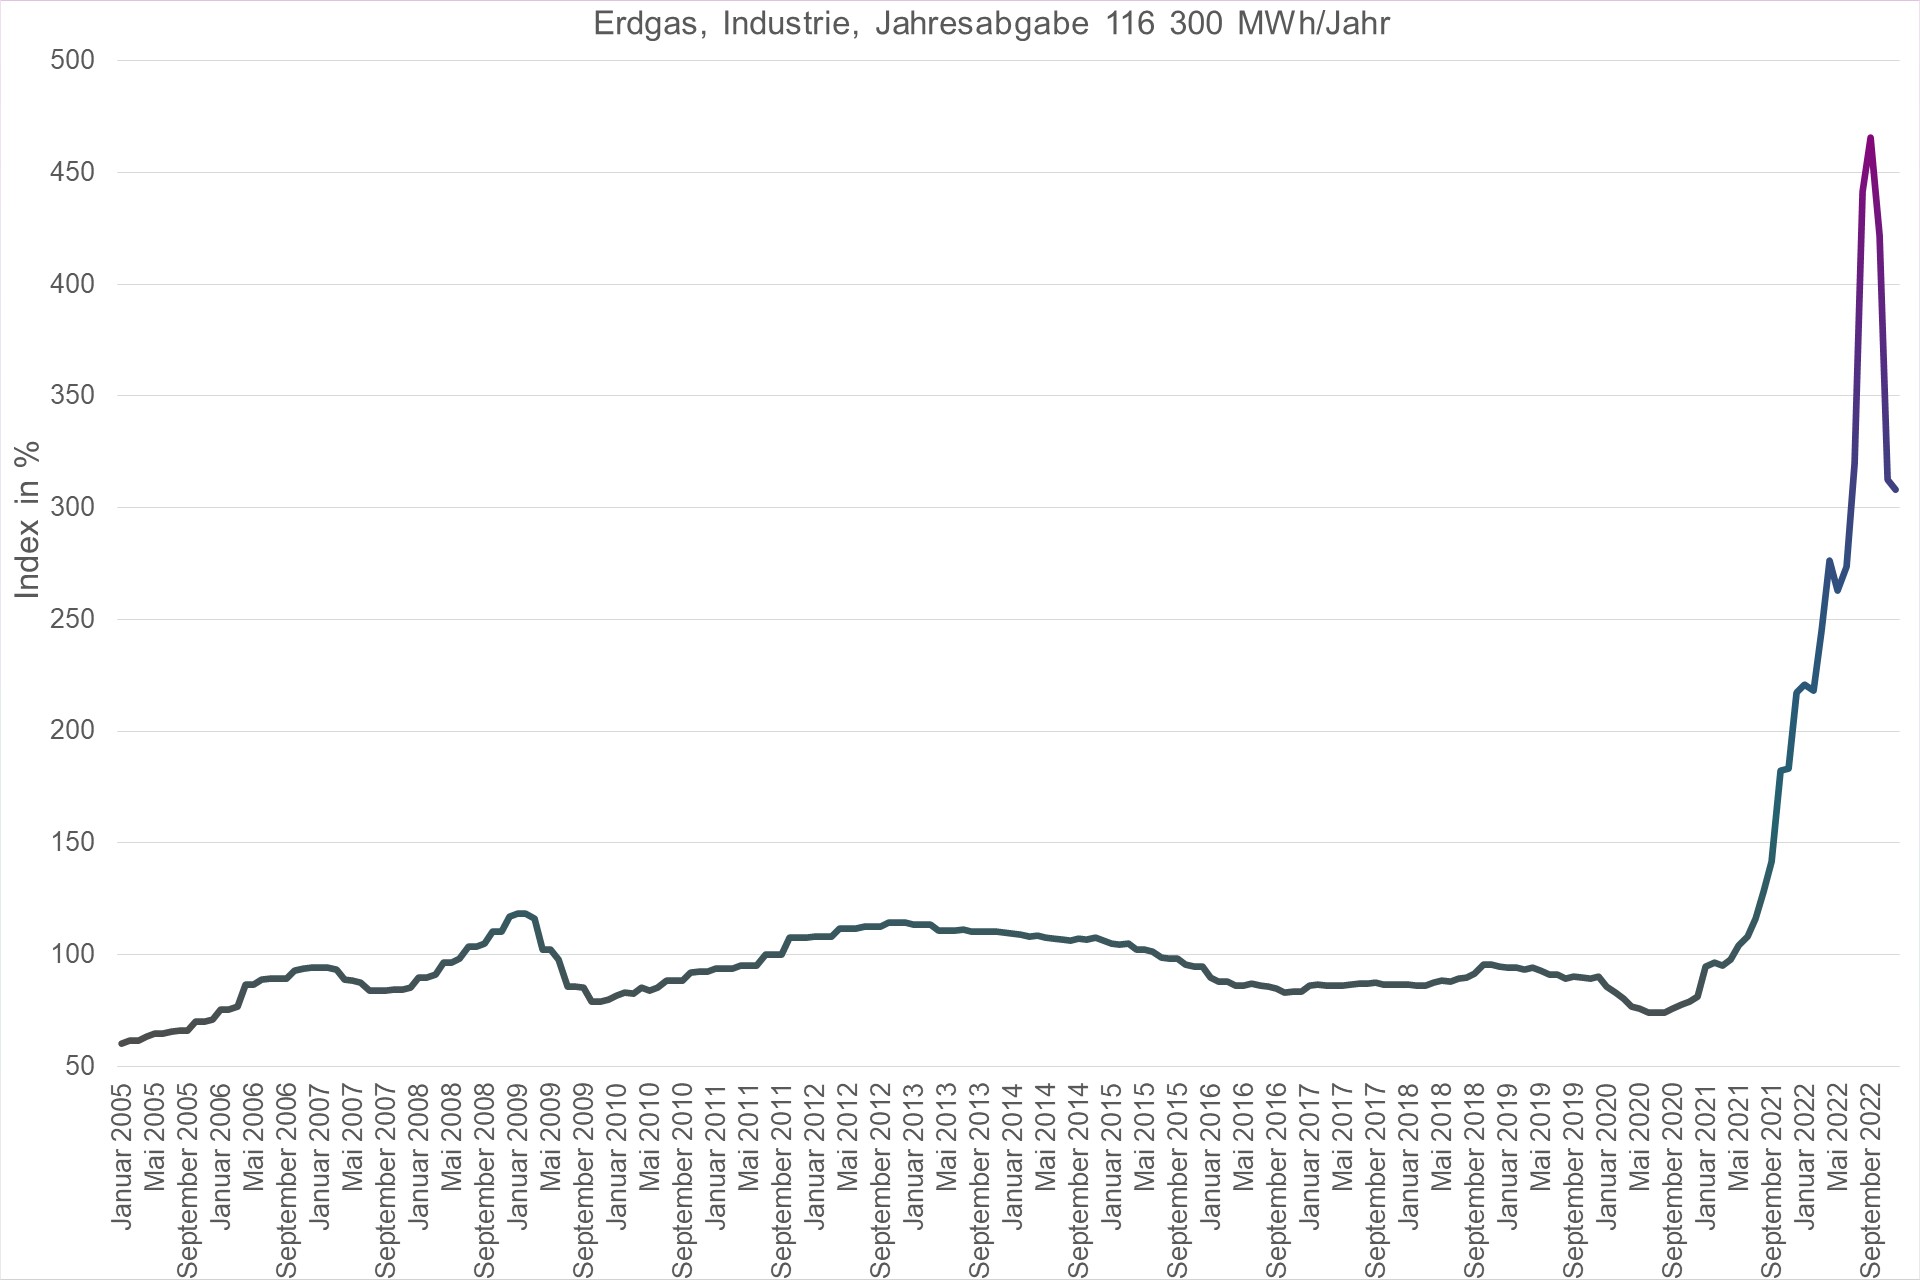 Grafik Preisindex Erdgas, Industrie, Jahresabgabe 116300 MWh/Jahr